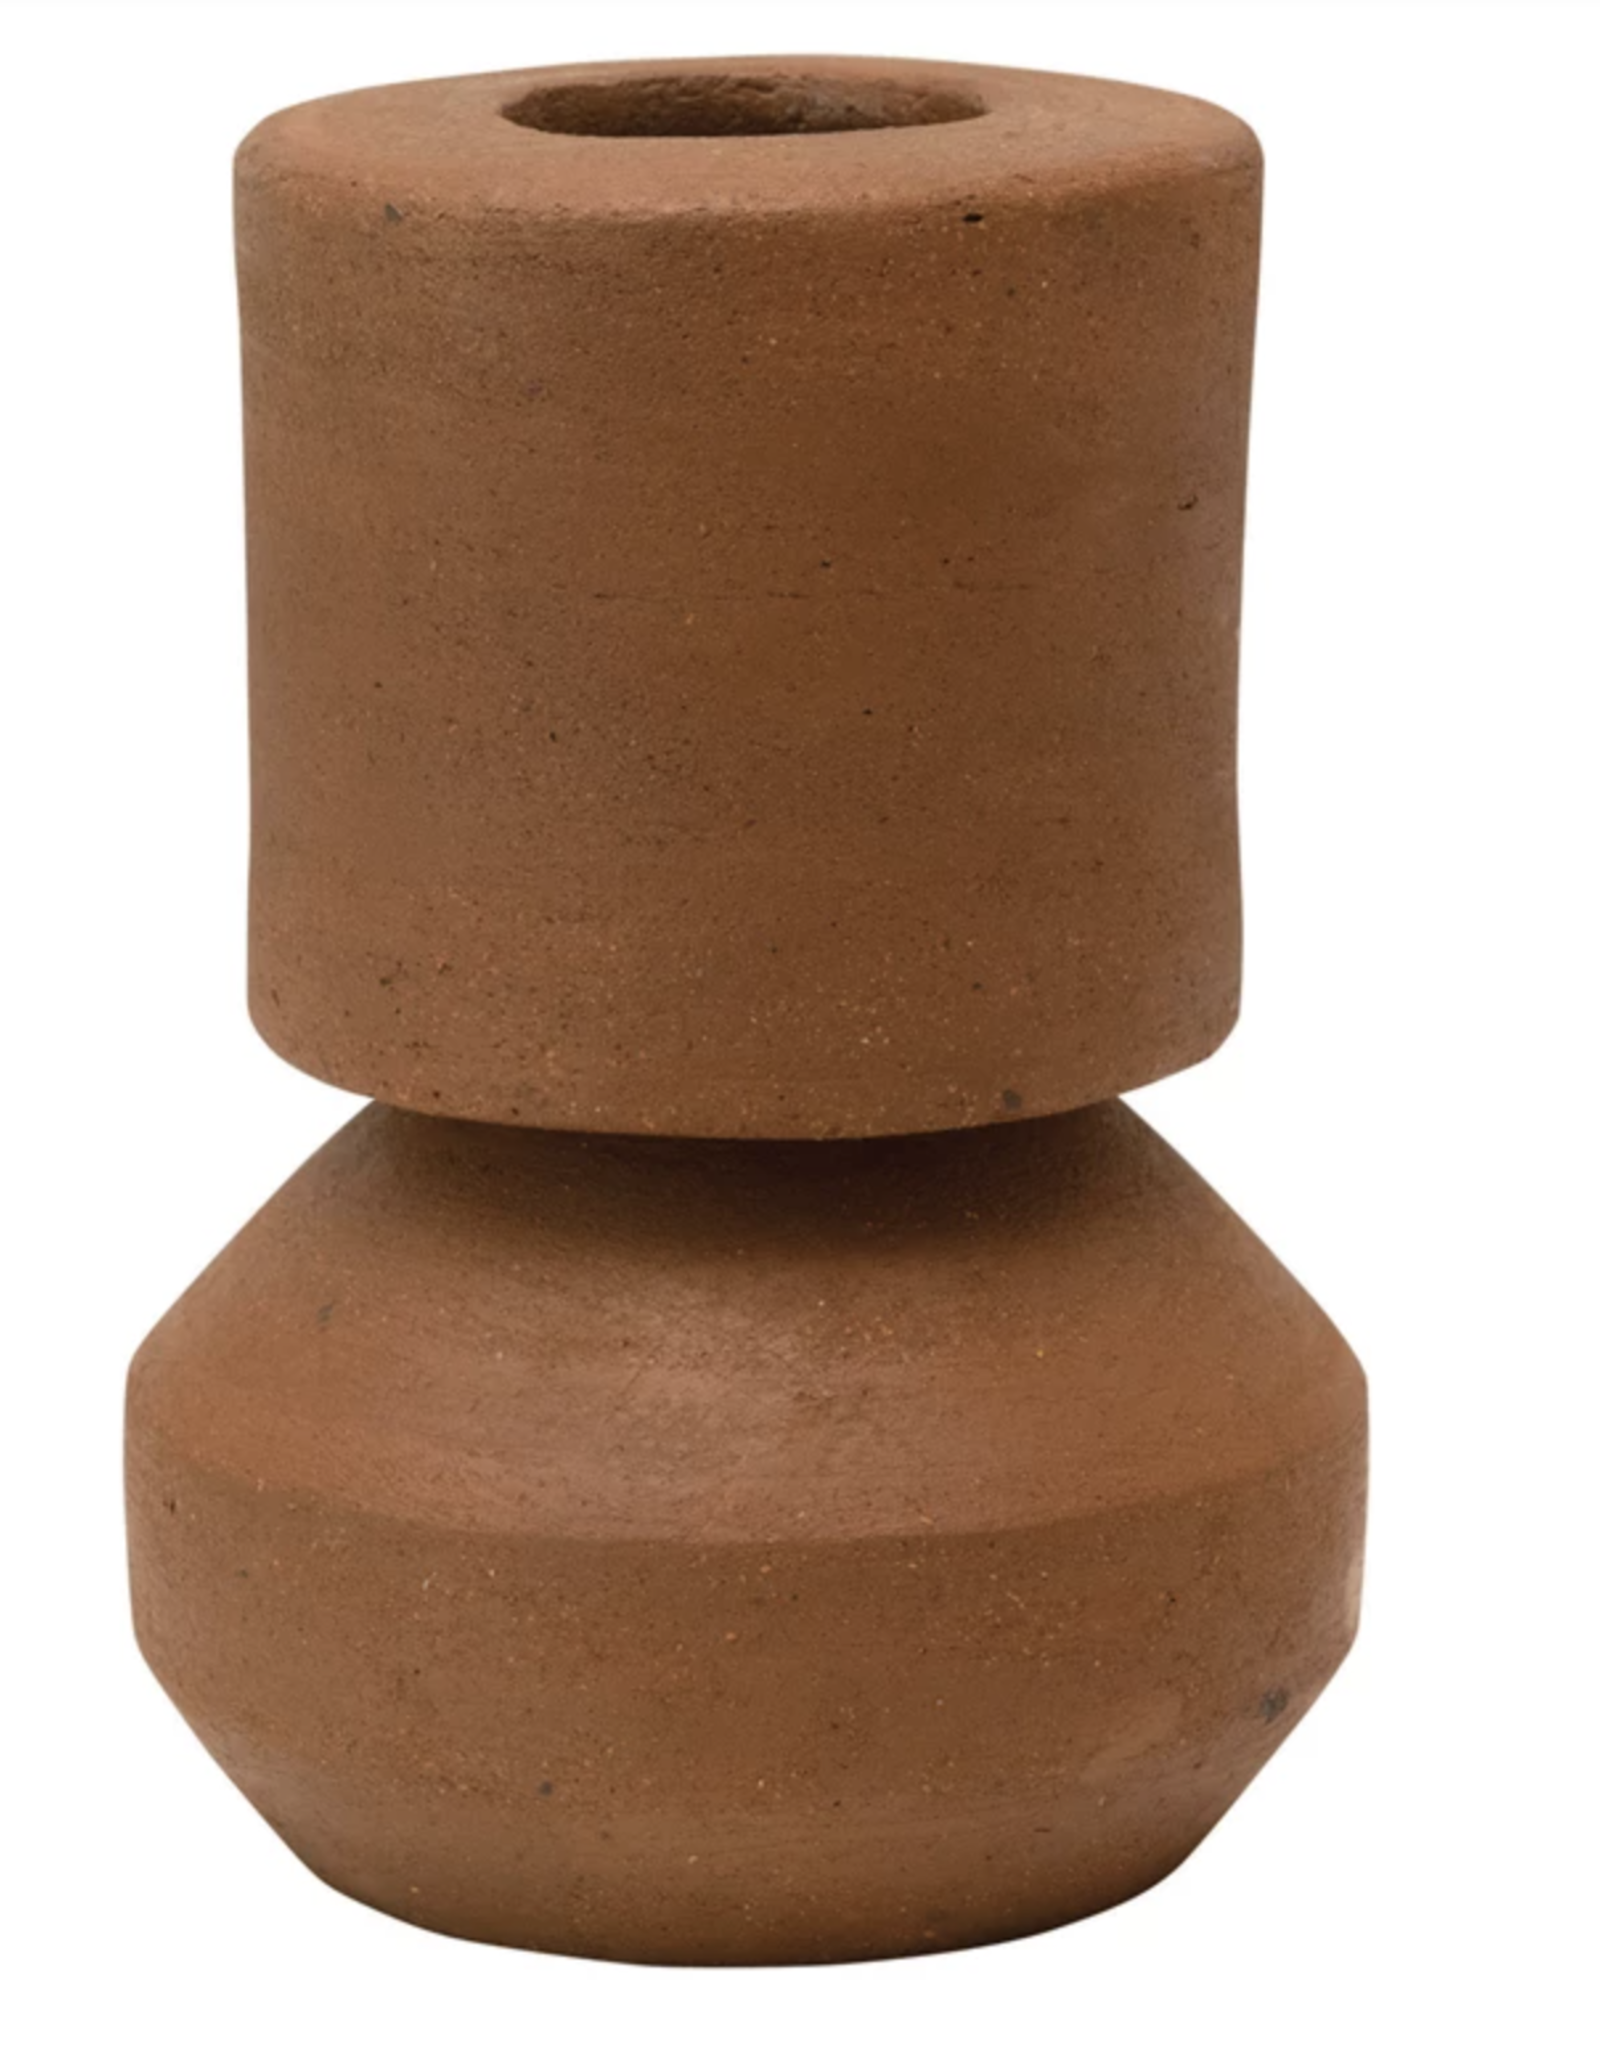 6" Handmade Terracotta Vase